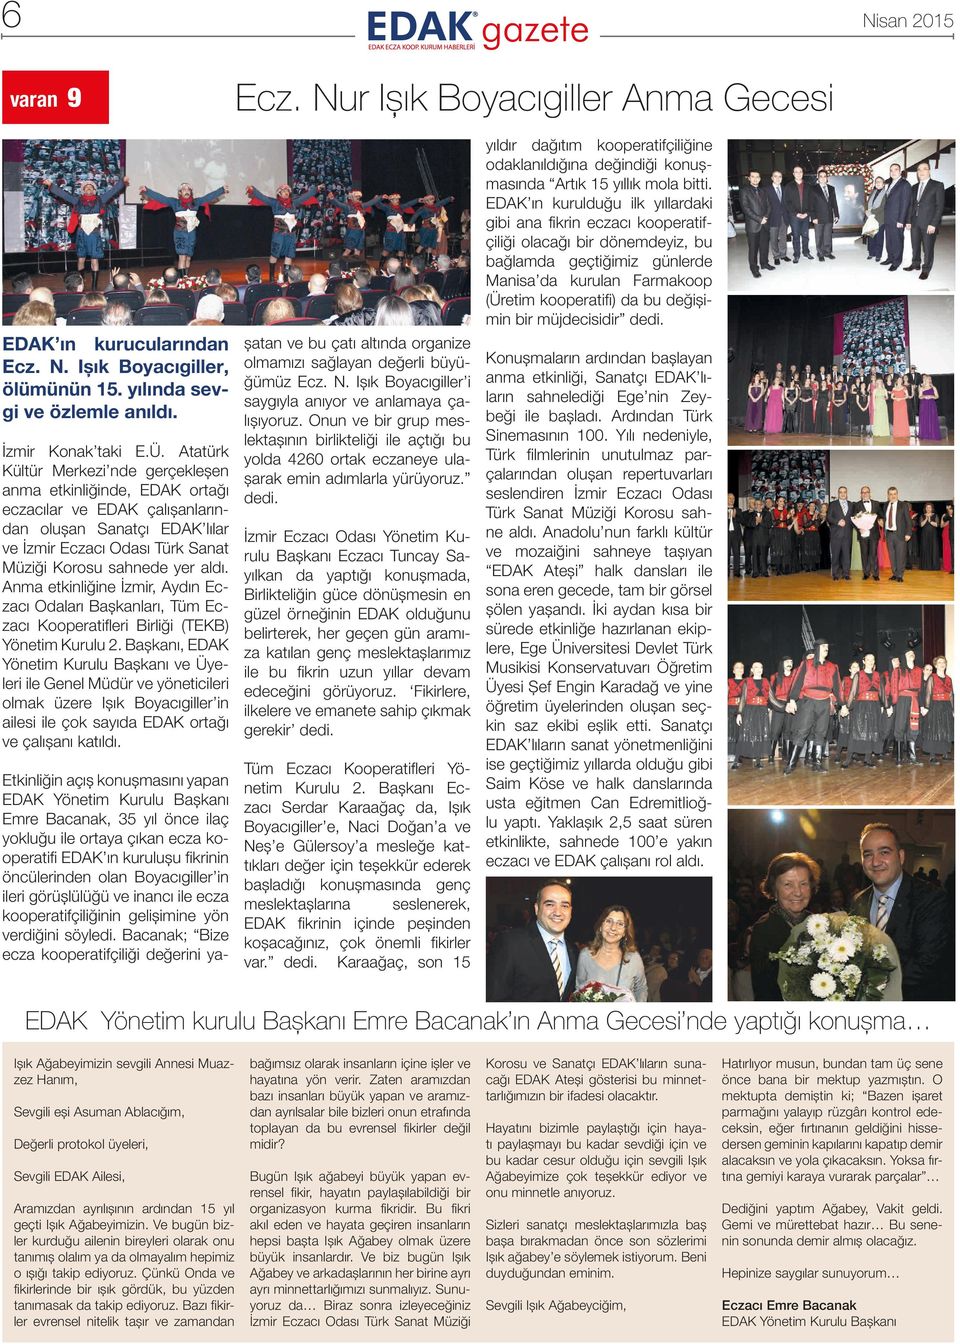 Anma etkinliğine İzmir, Aydın Eczacı Odaları Başkanları, Tüm Eczacı Kooperatifleri Birliği (TEKB) Yönetim Kurulu 2.